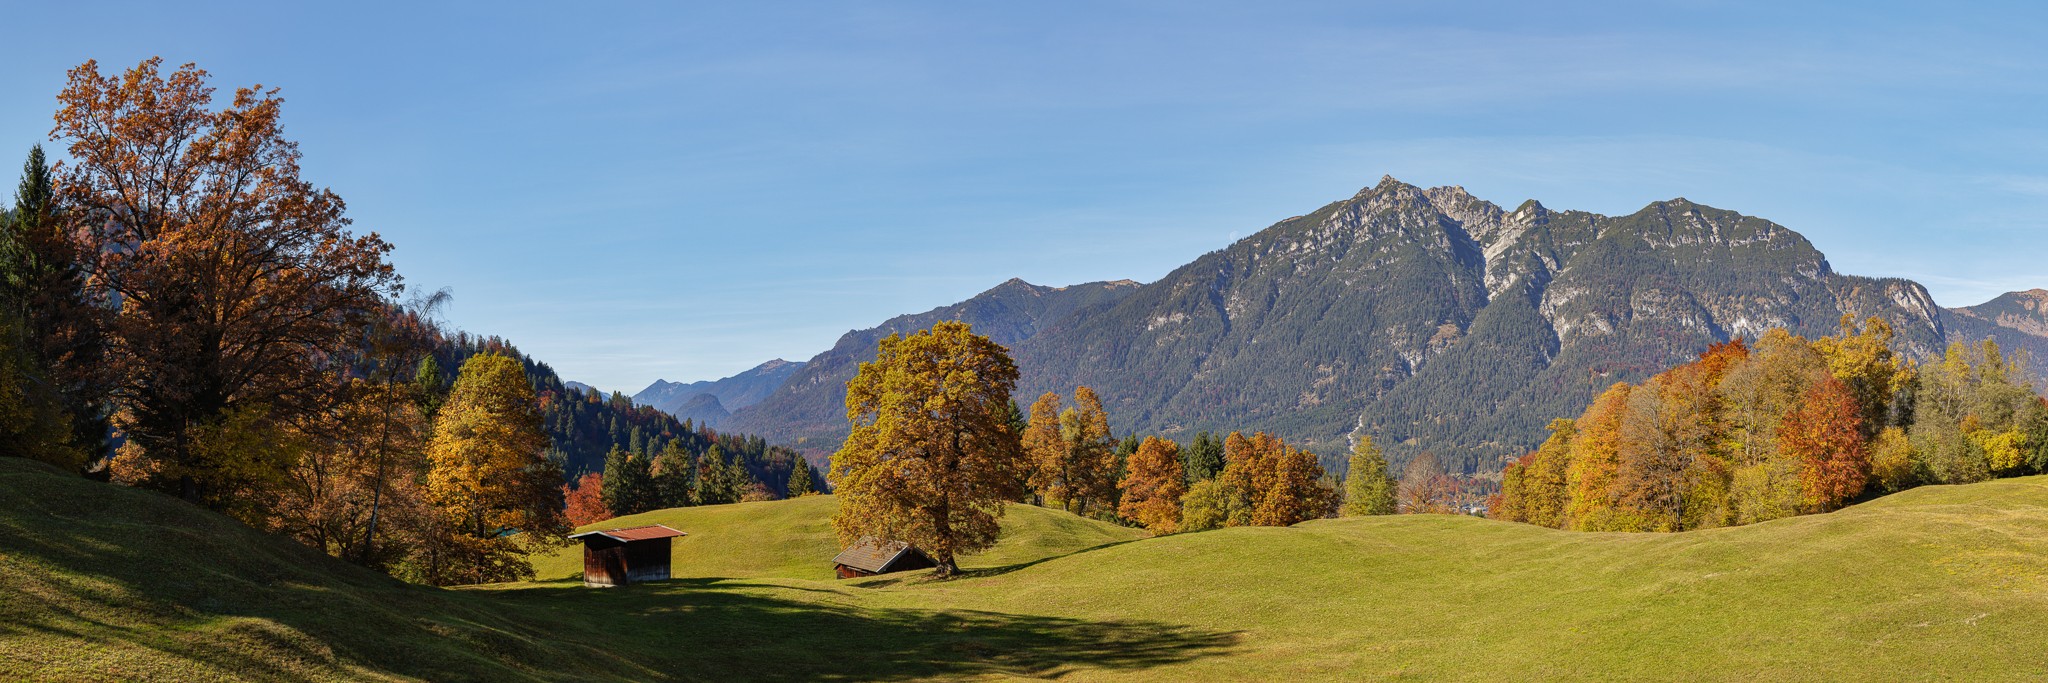 Wanderung zur Kochelbergalm - Herbst in Garmisch-Partenkirchen.